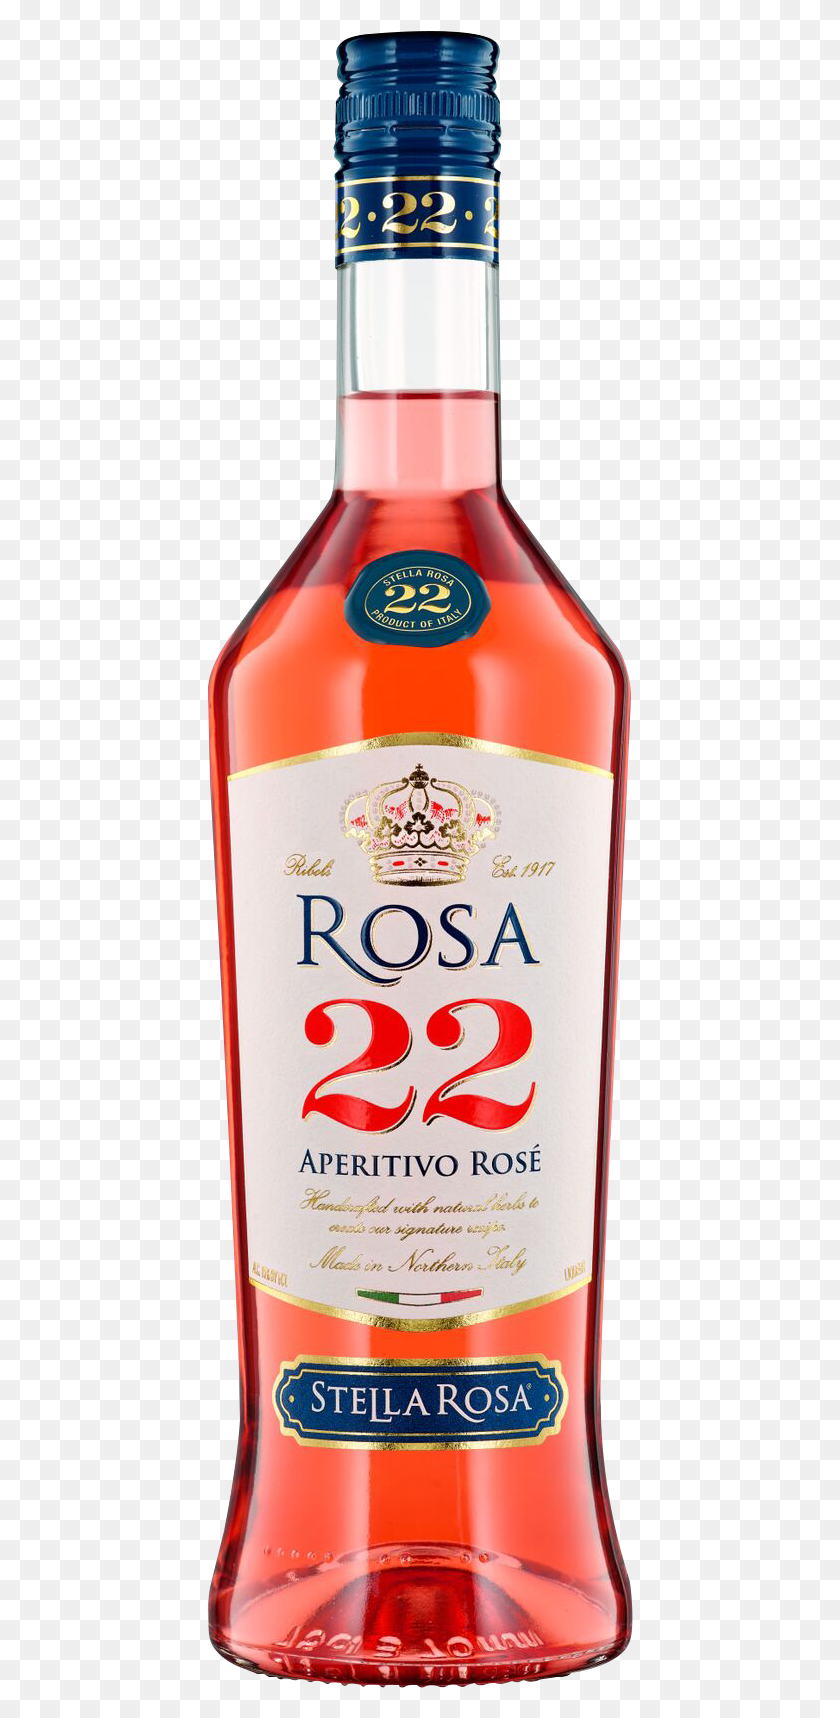 427x1658 Botella De Shot Stella Rosa 22 Aperitivo Rose, Alcohol, Bebida, Bebida Hd Png